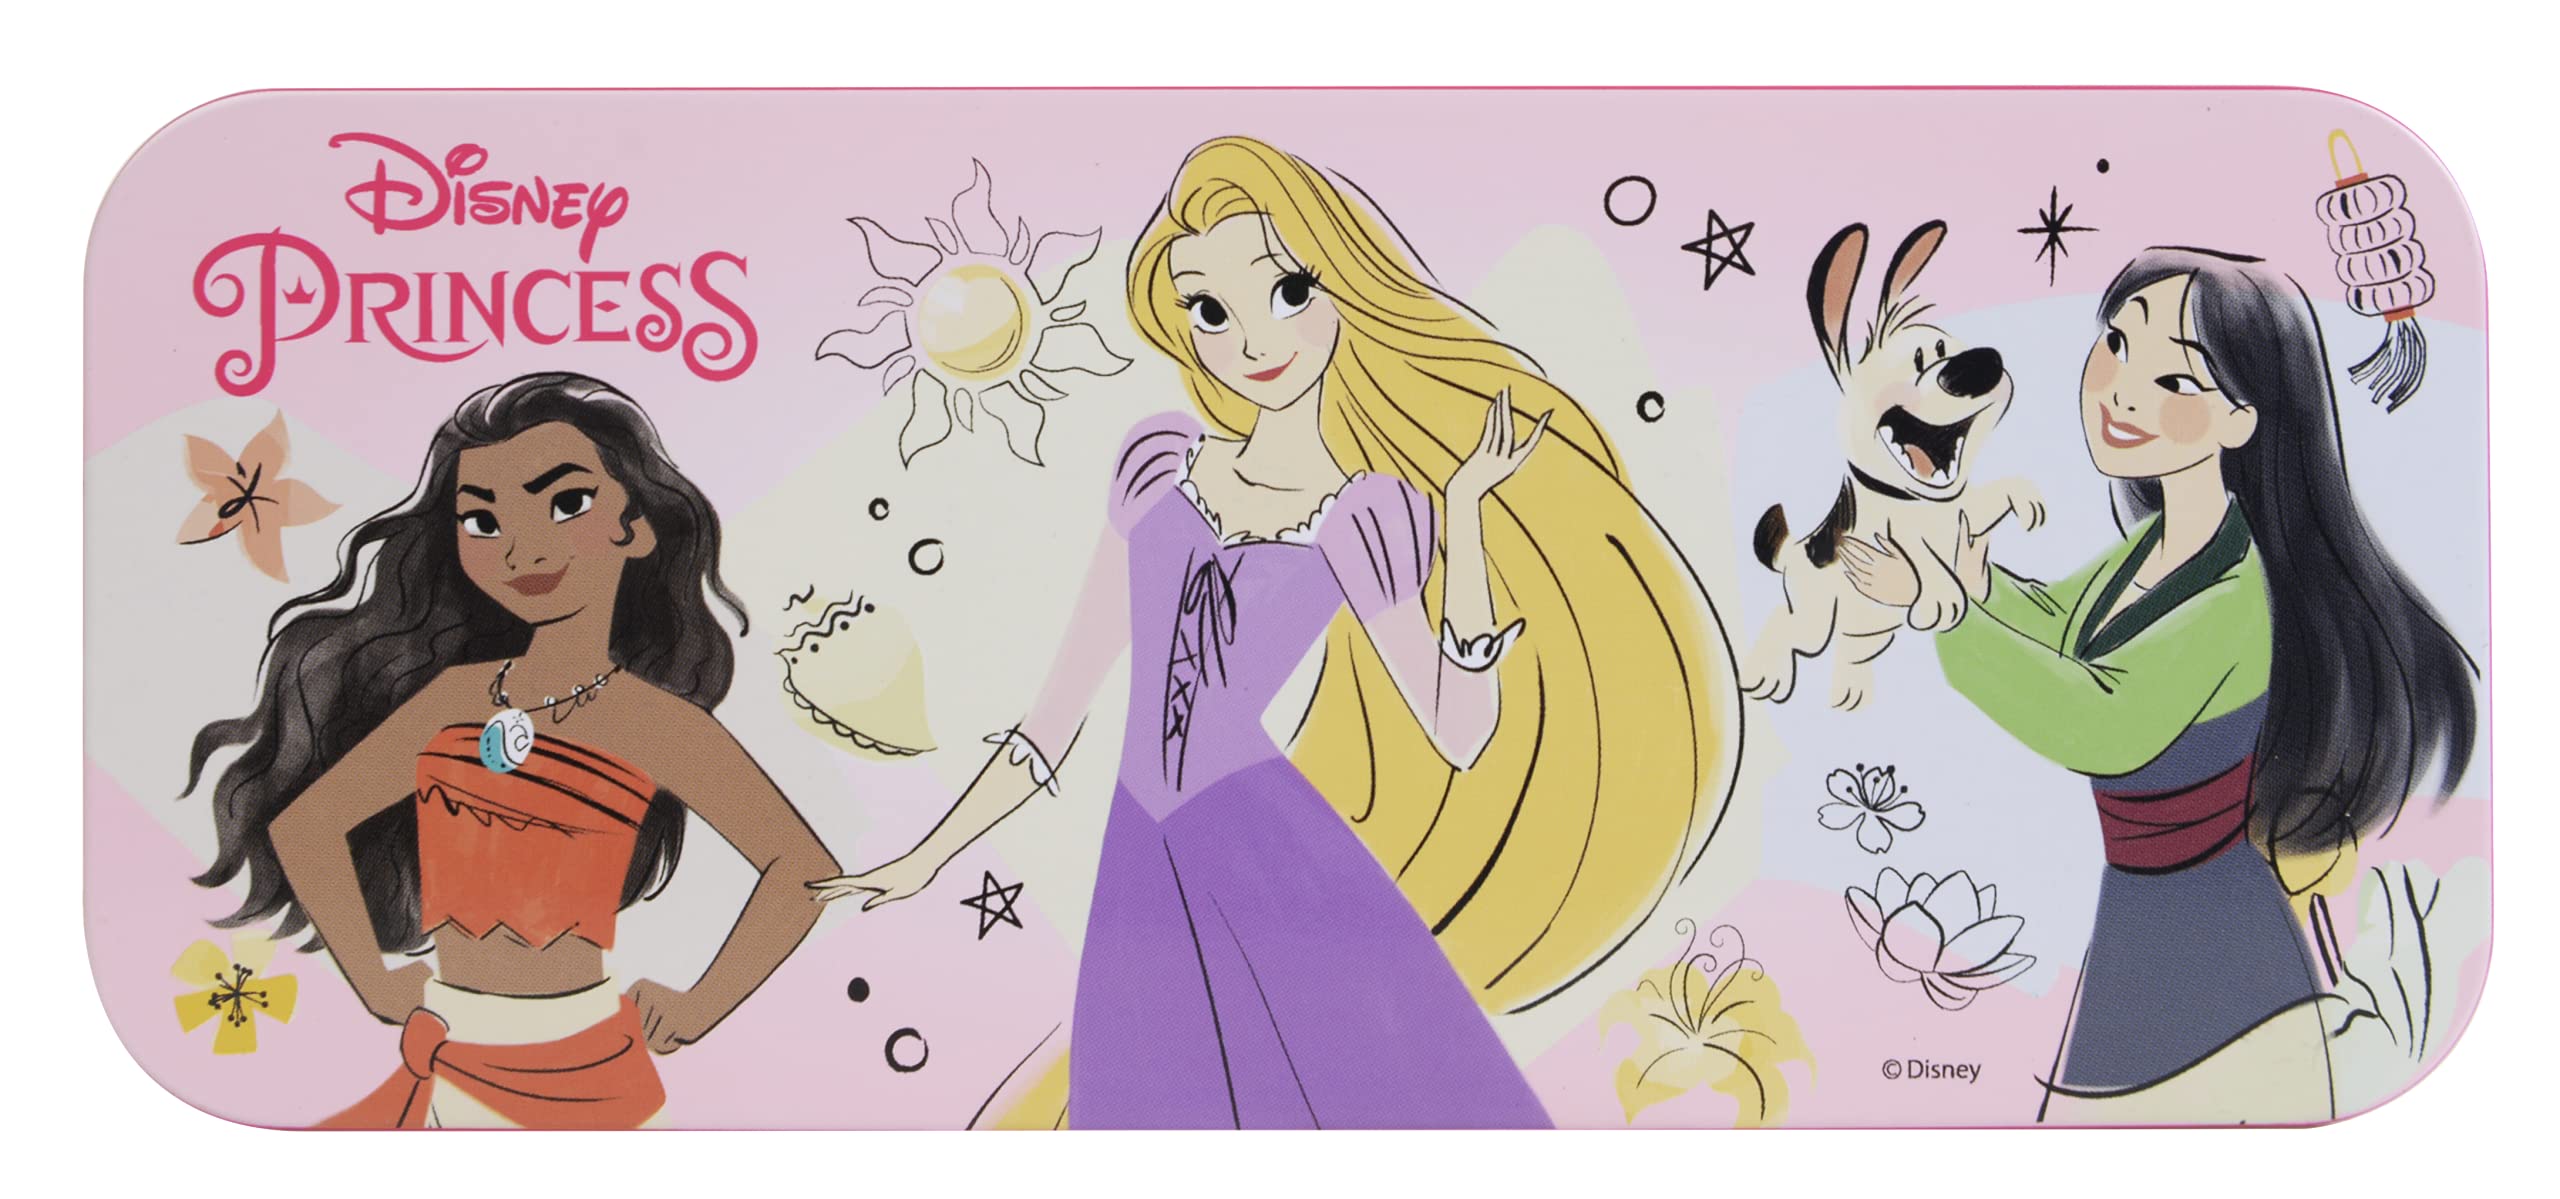 Princess Enchanting Destinations Book, Prinzessinnen Beauty-Buch, Make-up Set für Schminkspaß, buntem Zubehör, Spielzeug und Geschenke für Kinder